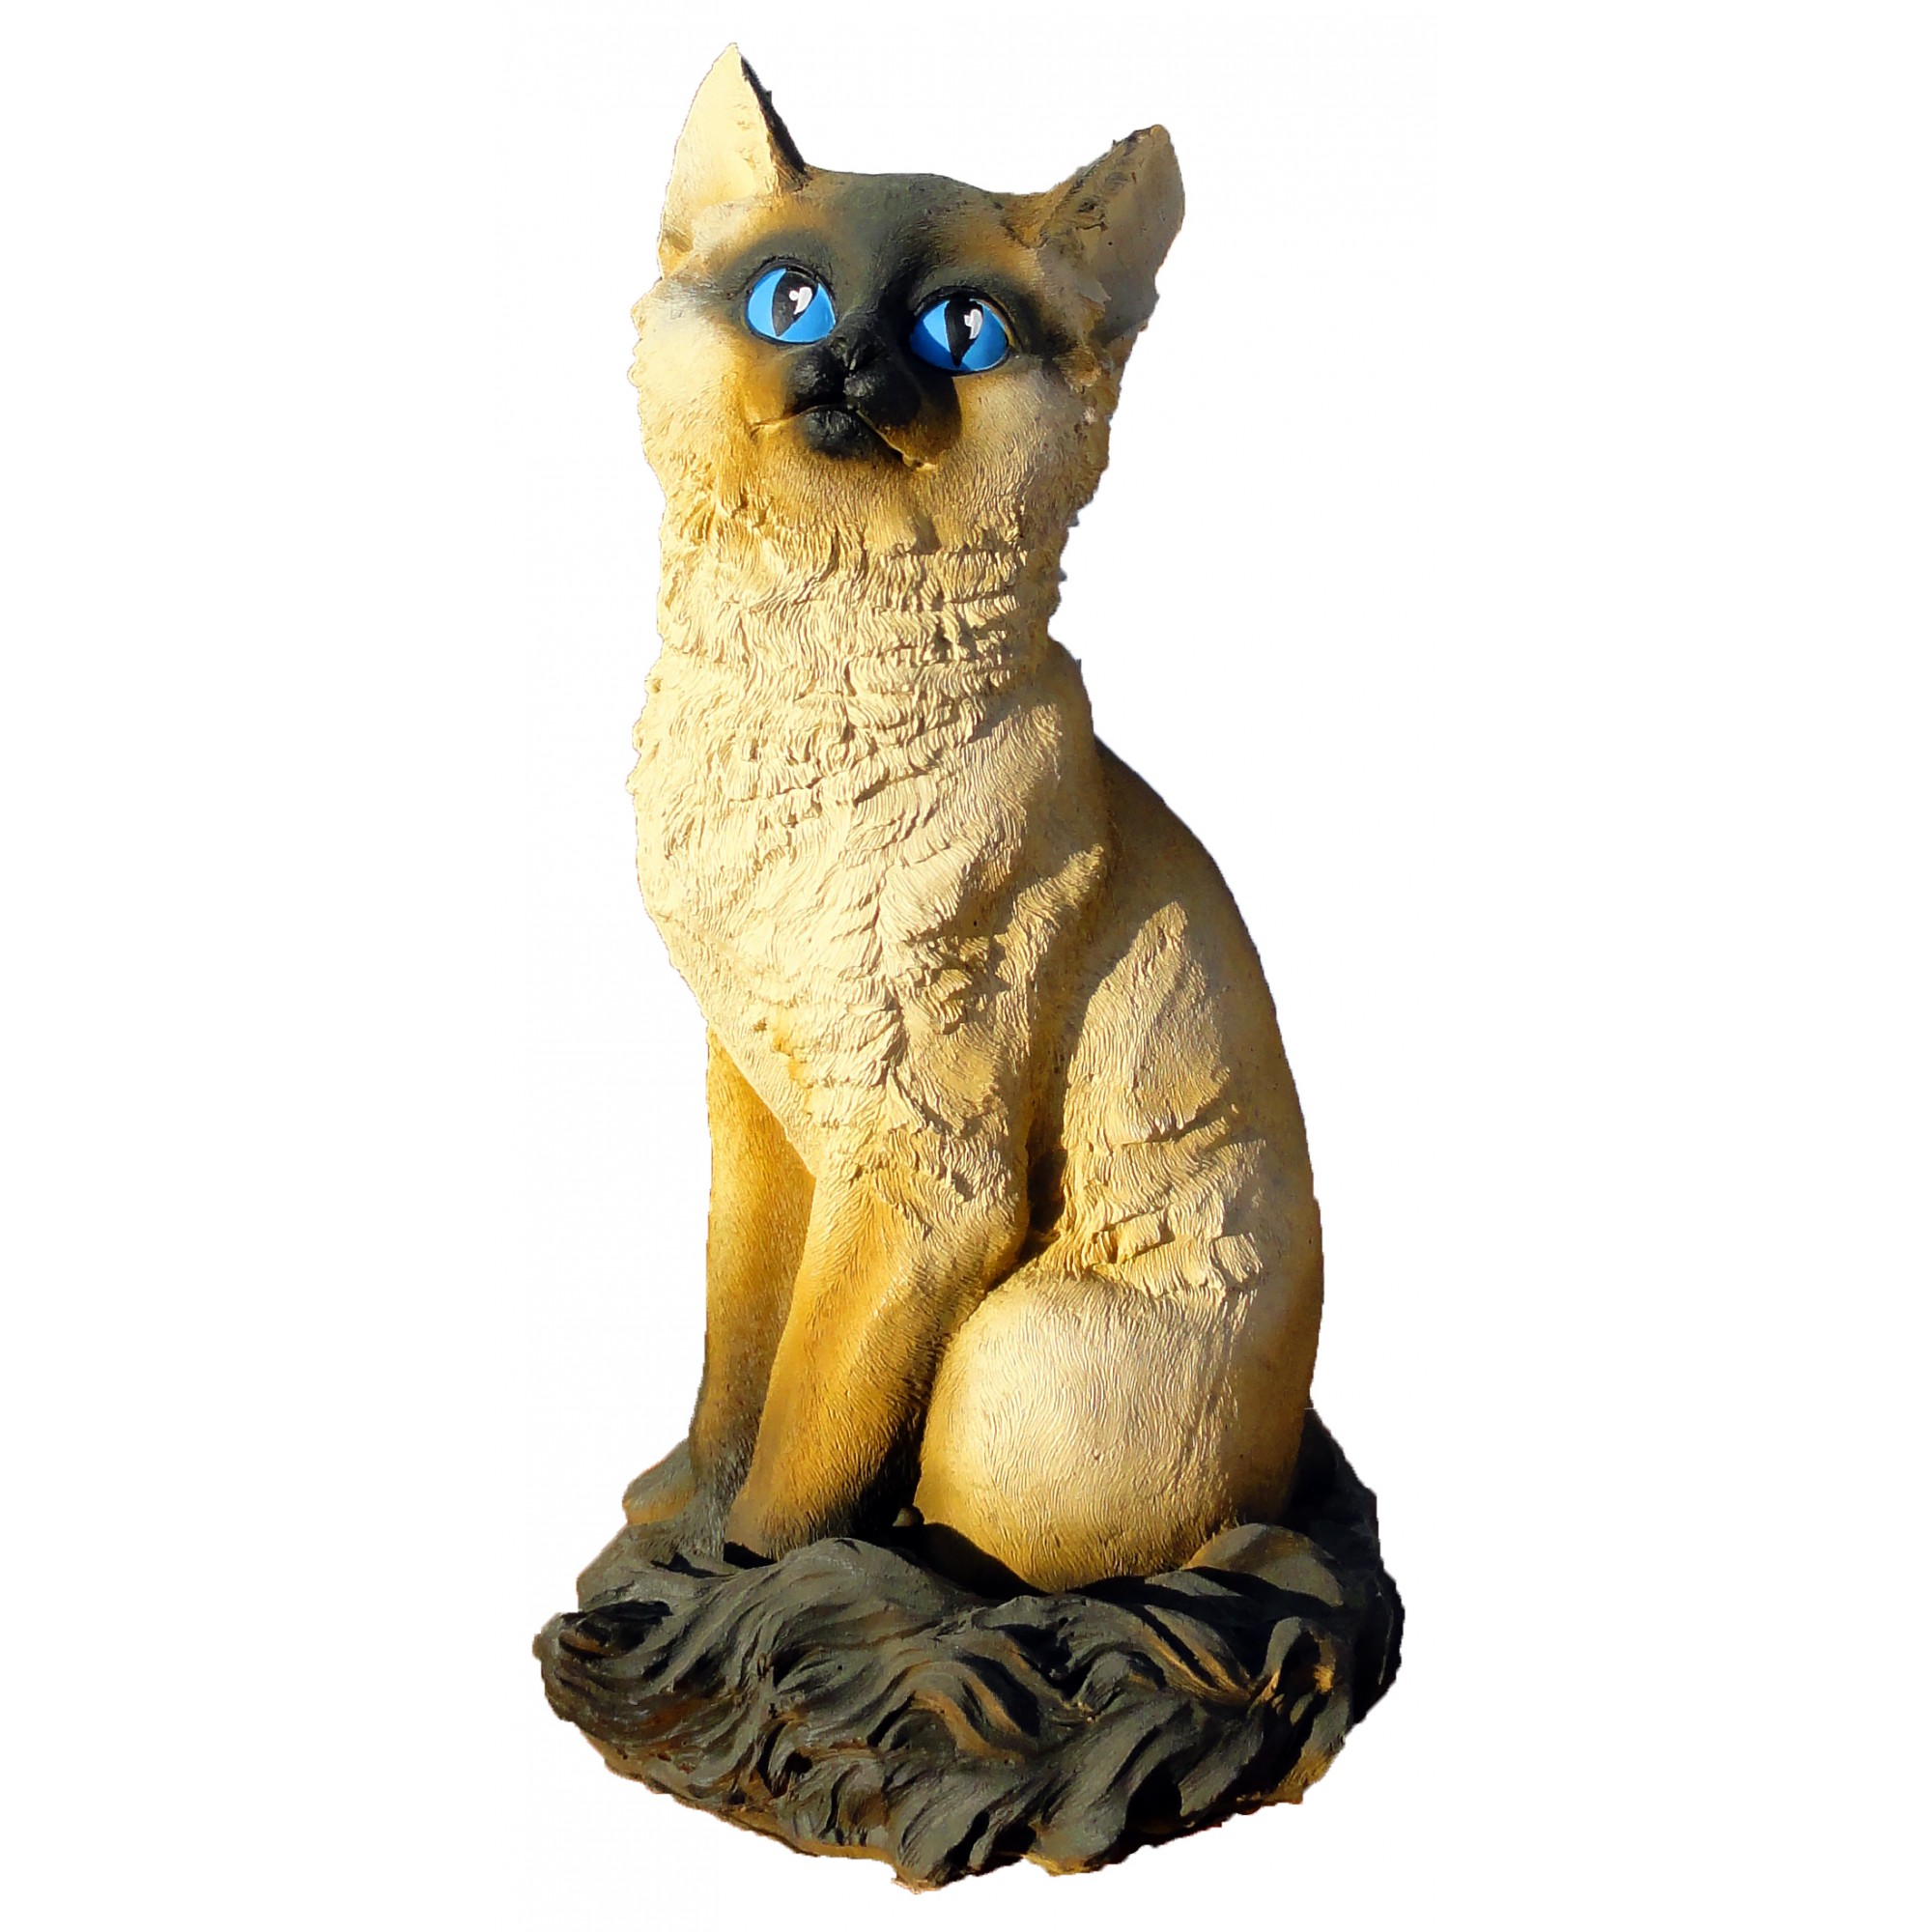 Скульптура «Котёнок сидит» большой, садовая декоративная фигура из бетона -  купить в интернет-магазине | Краснодар